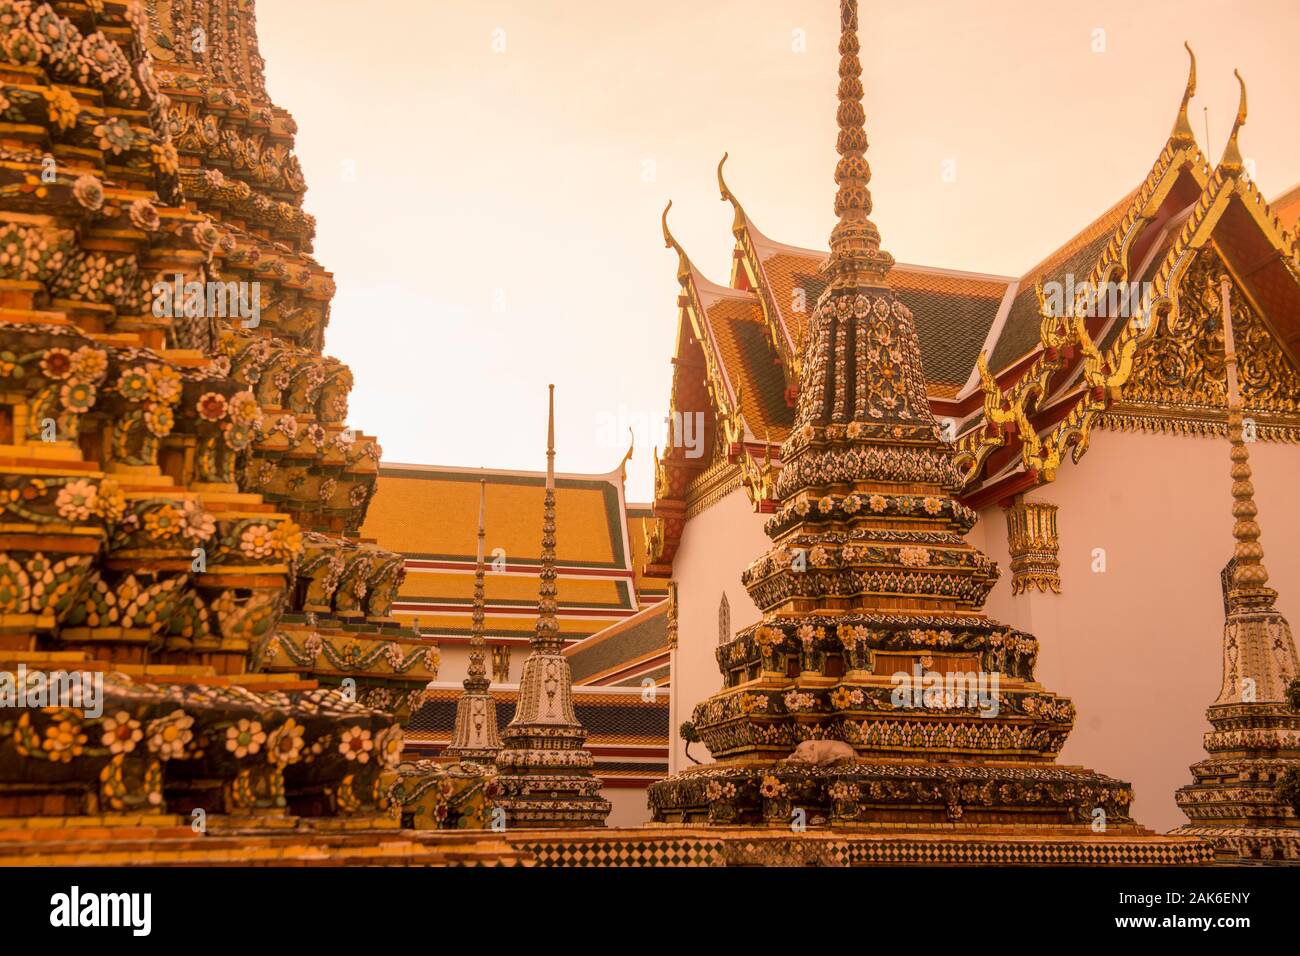 Le Wat Pho à la ville de Bangkok en Thaïlande en Asie Southest. Thaïlande, Bangkok, novembre, 2019 Banque D'Images